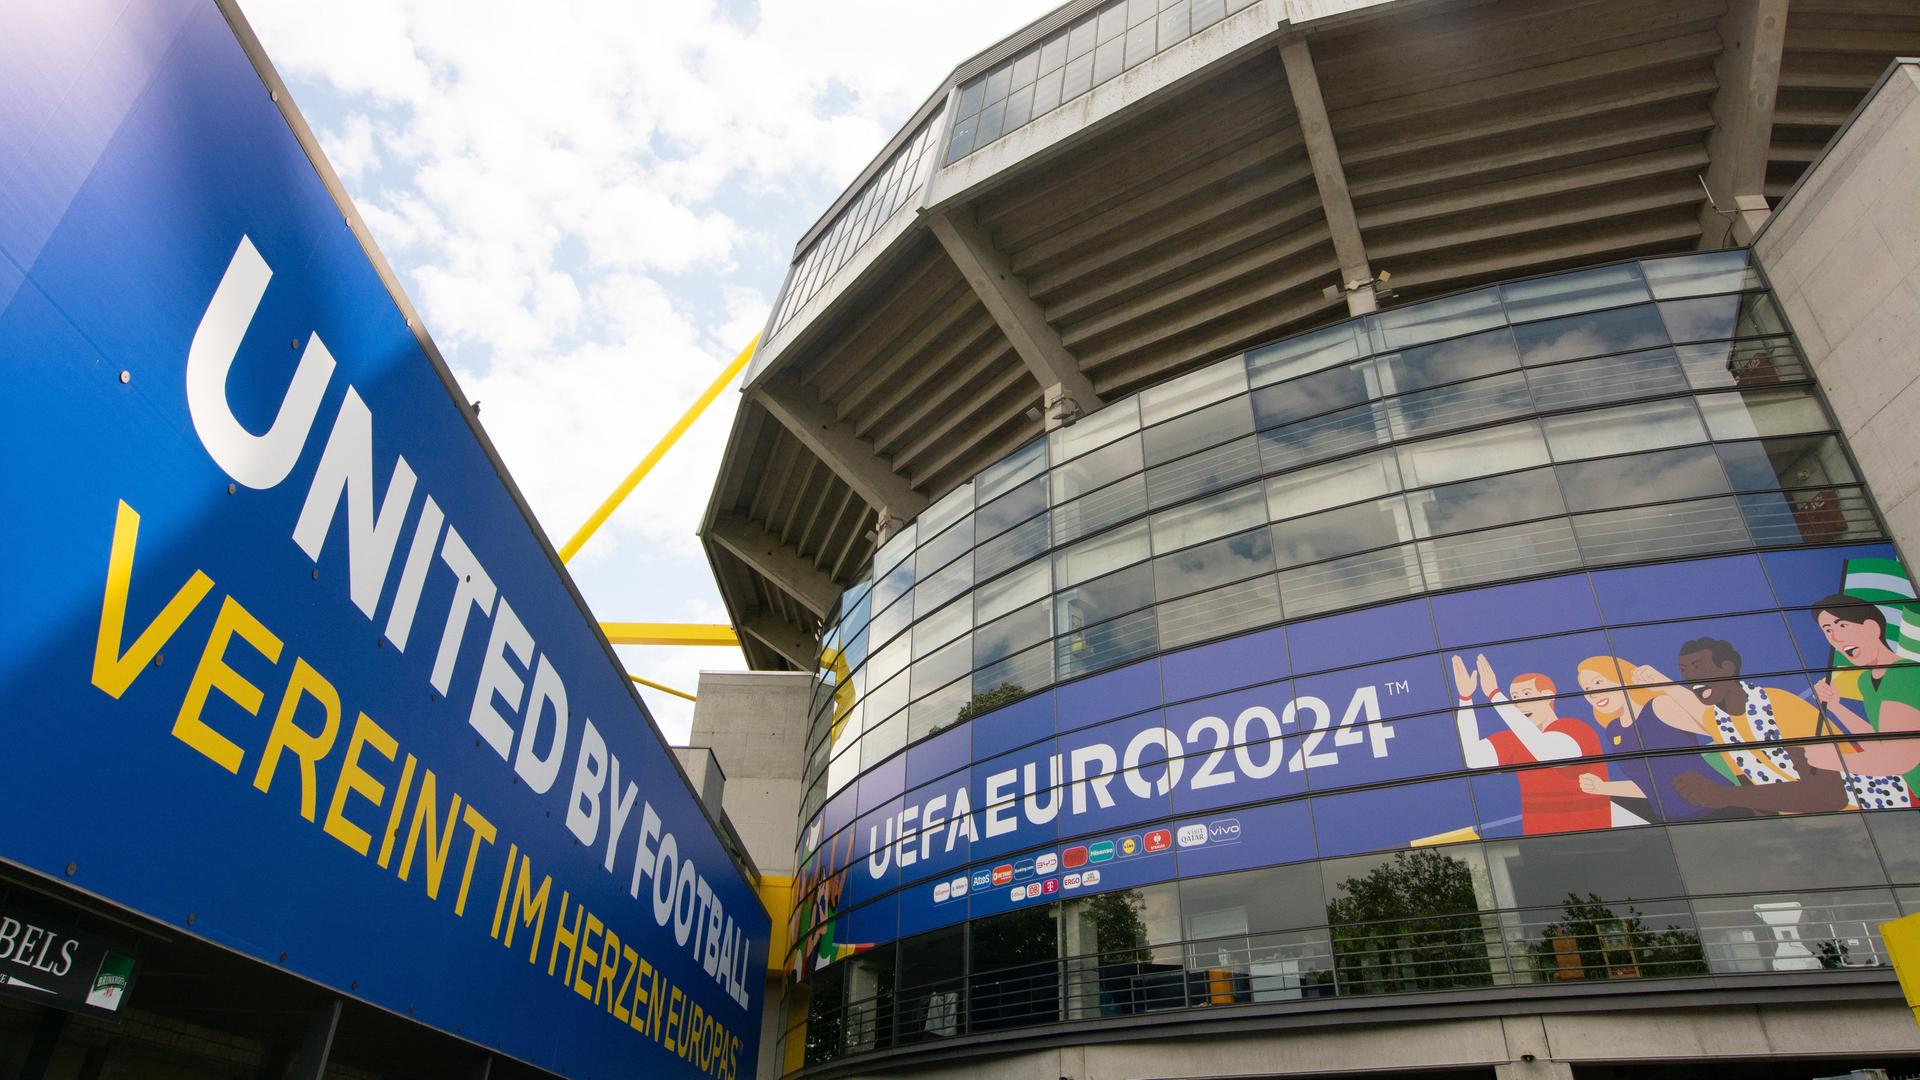 Das für die Fußball-EM umdekorierte Stadion in Dortmund